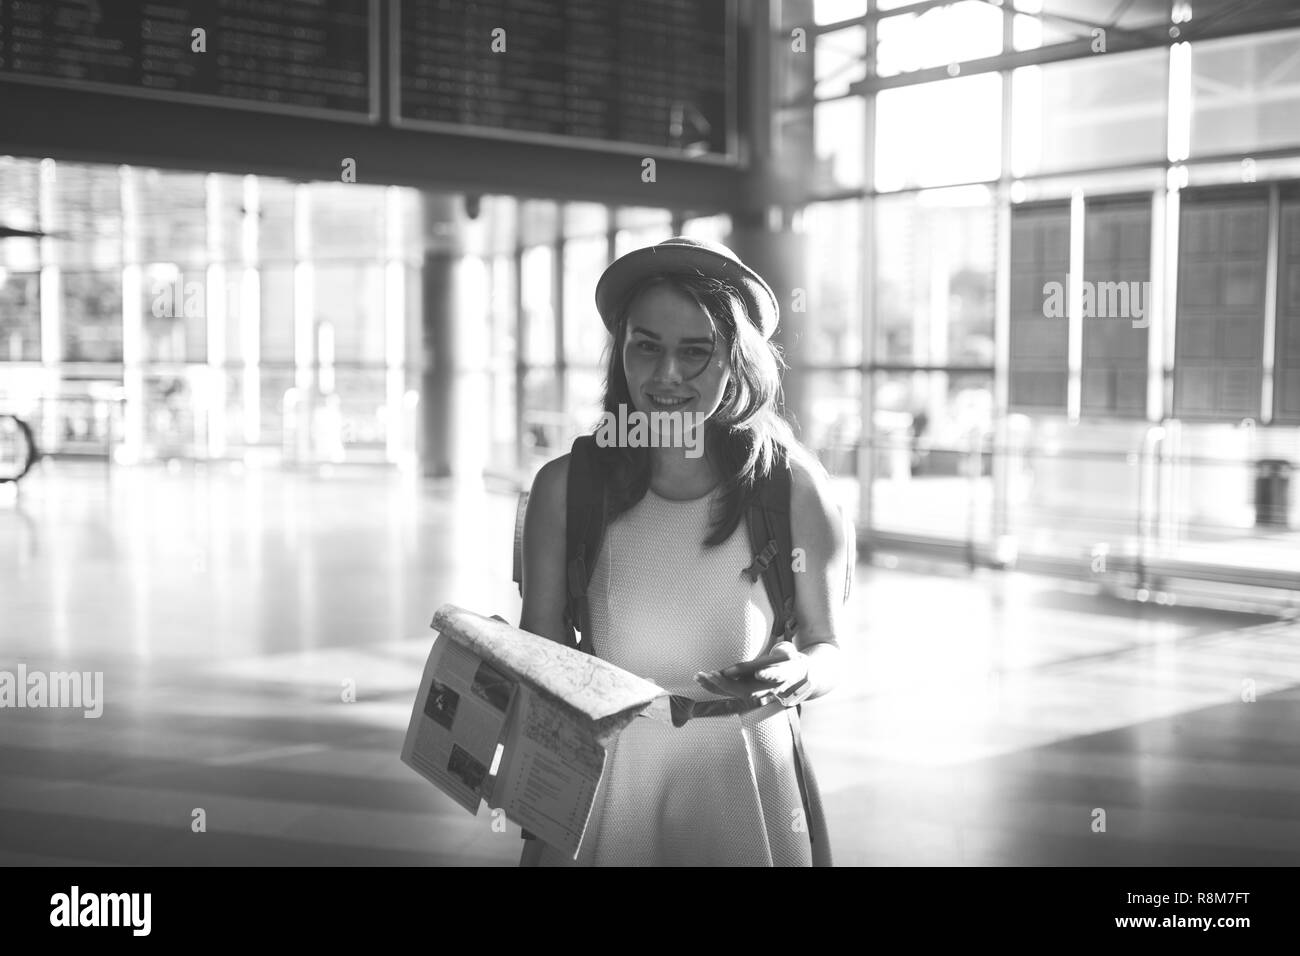 Thema Reisen und Transport. Schönen jungen kaukasischen Frau in Kleid und Rucksack im Bahnhof Terminal mit Blick auf elektronische sc Stockfoto